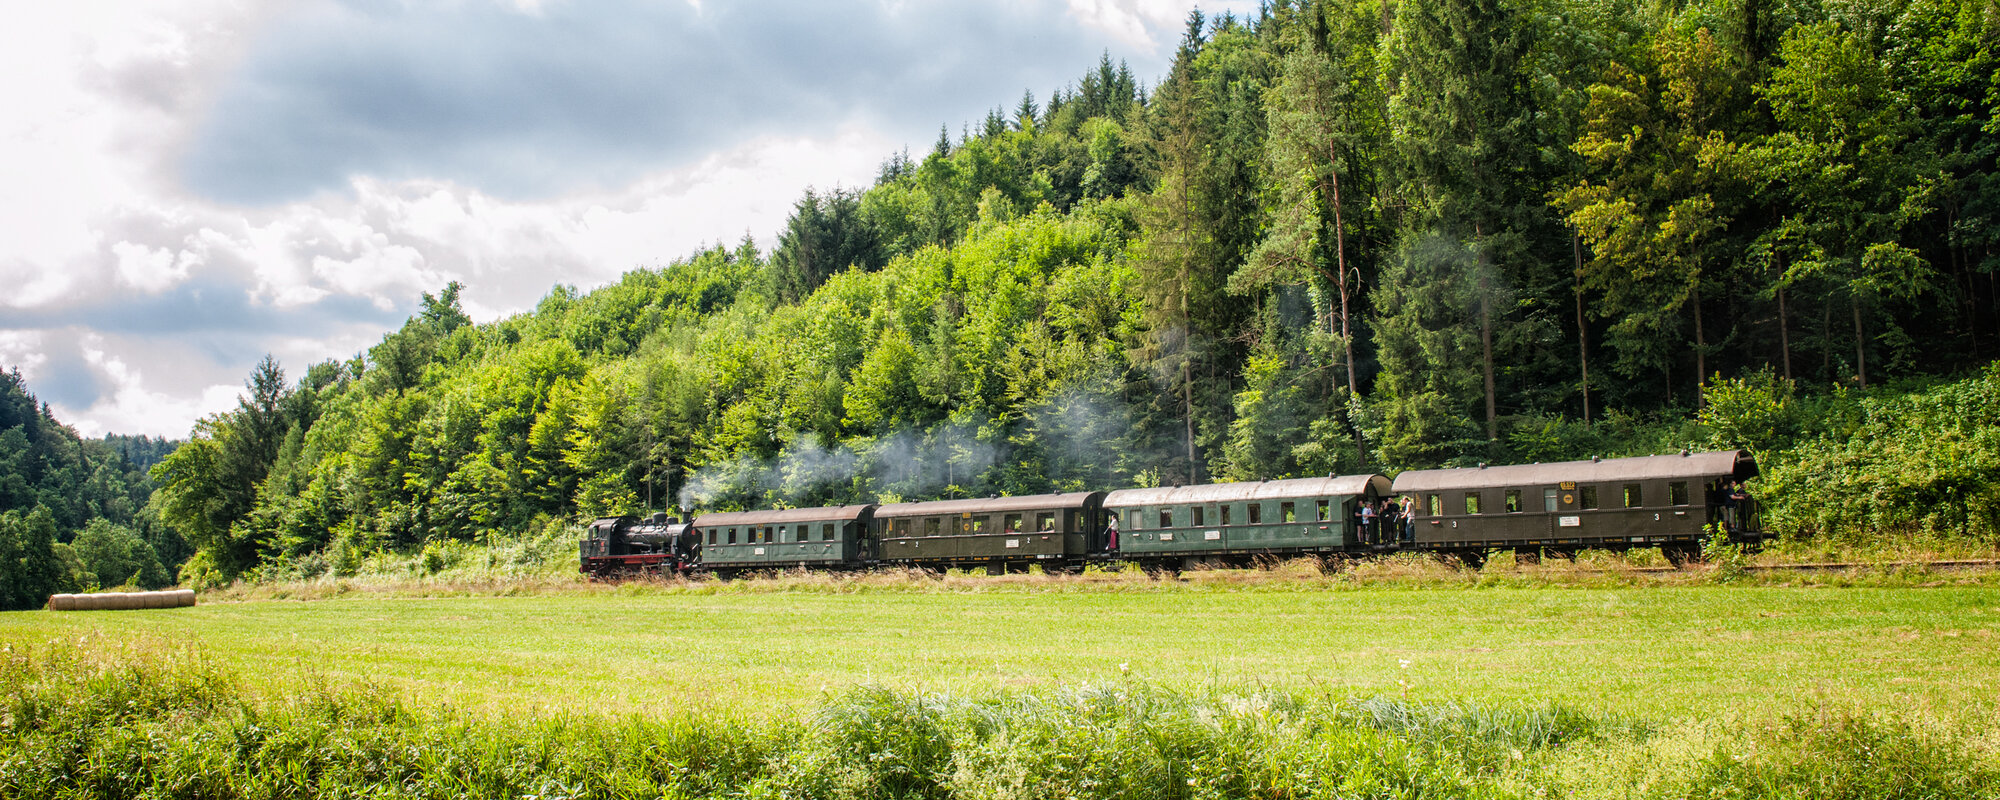 Eine alte, dampfende Eisenbahn mit vier Waggons fährt vor einem Wald. Im Vordergrund ist ein Fluss zu sehen.